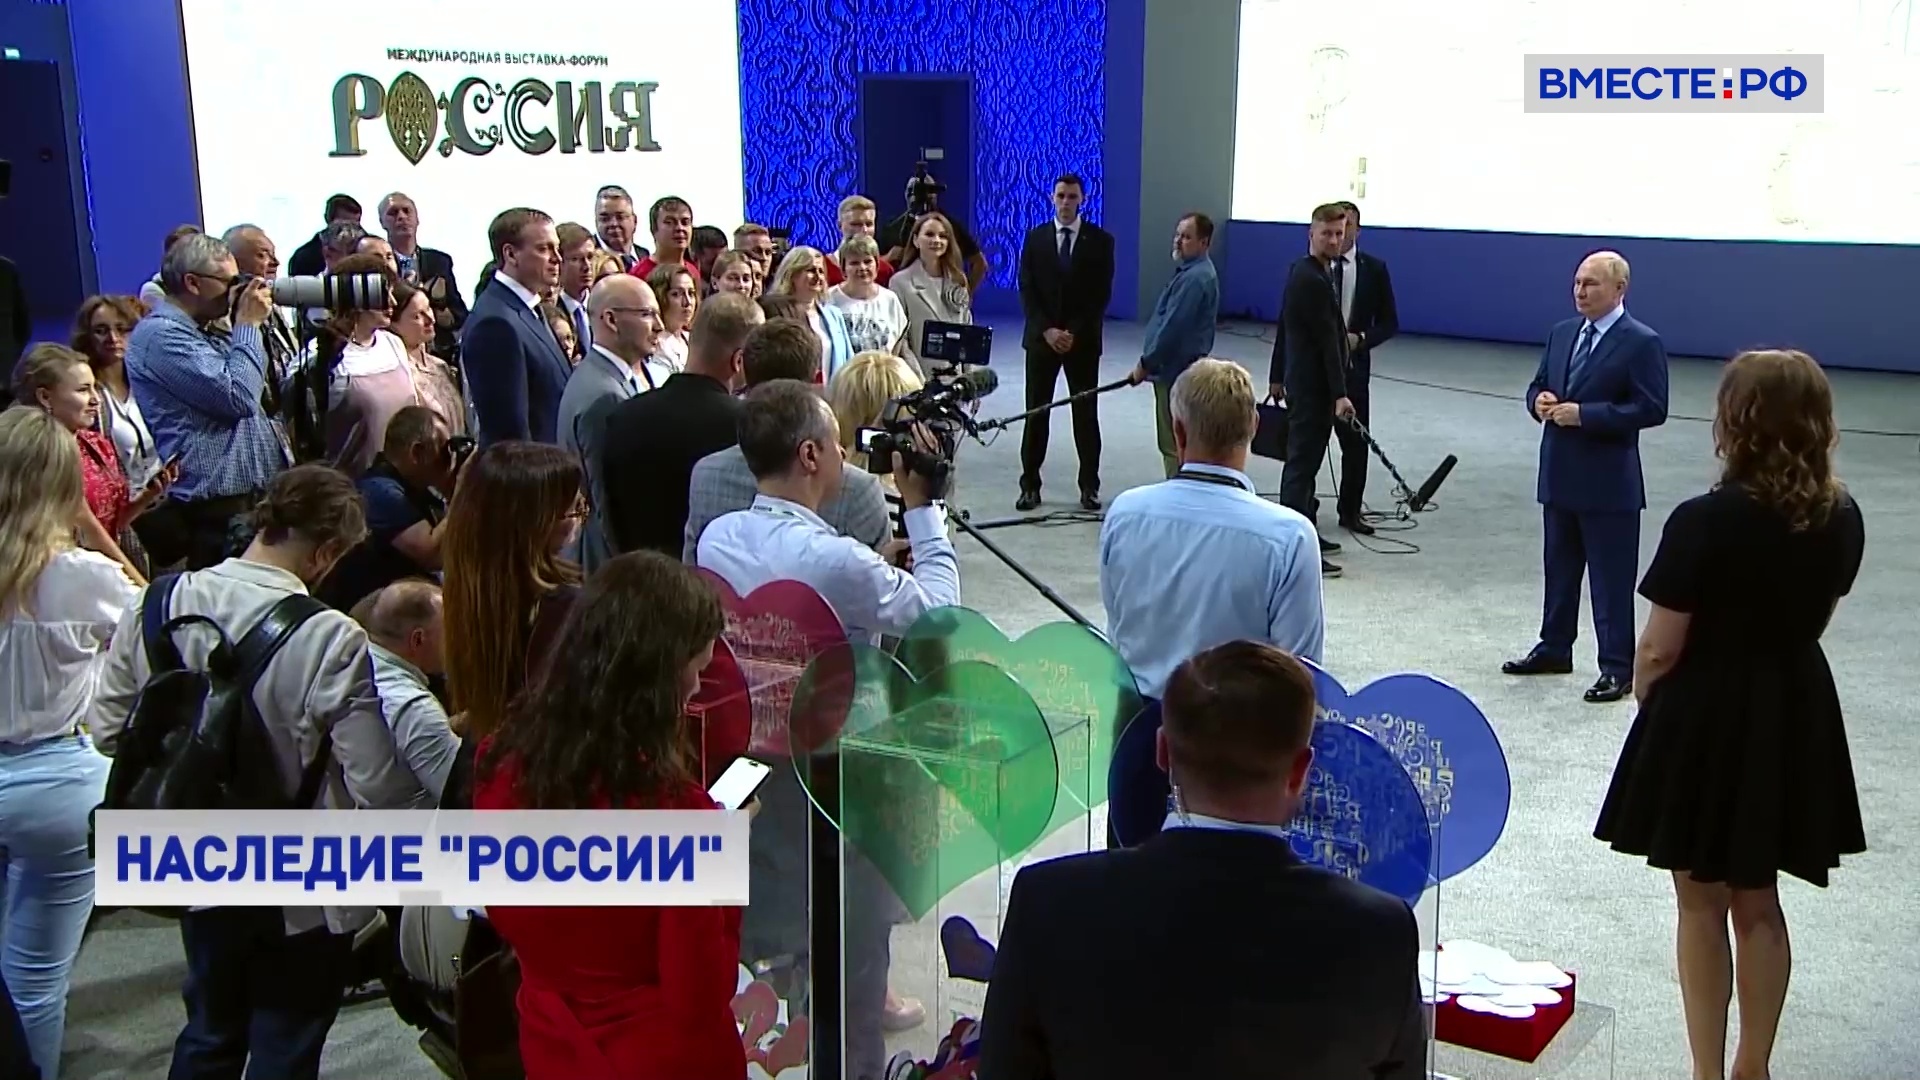 Путин встретился с организаторами выставки «Россия»